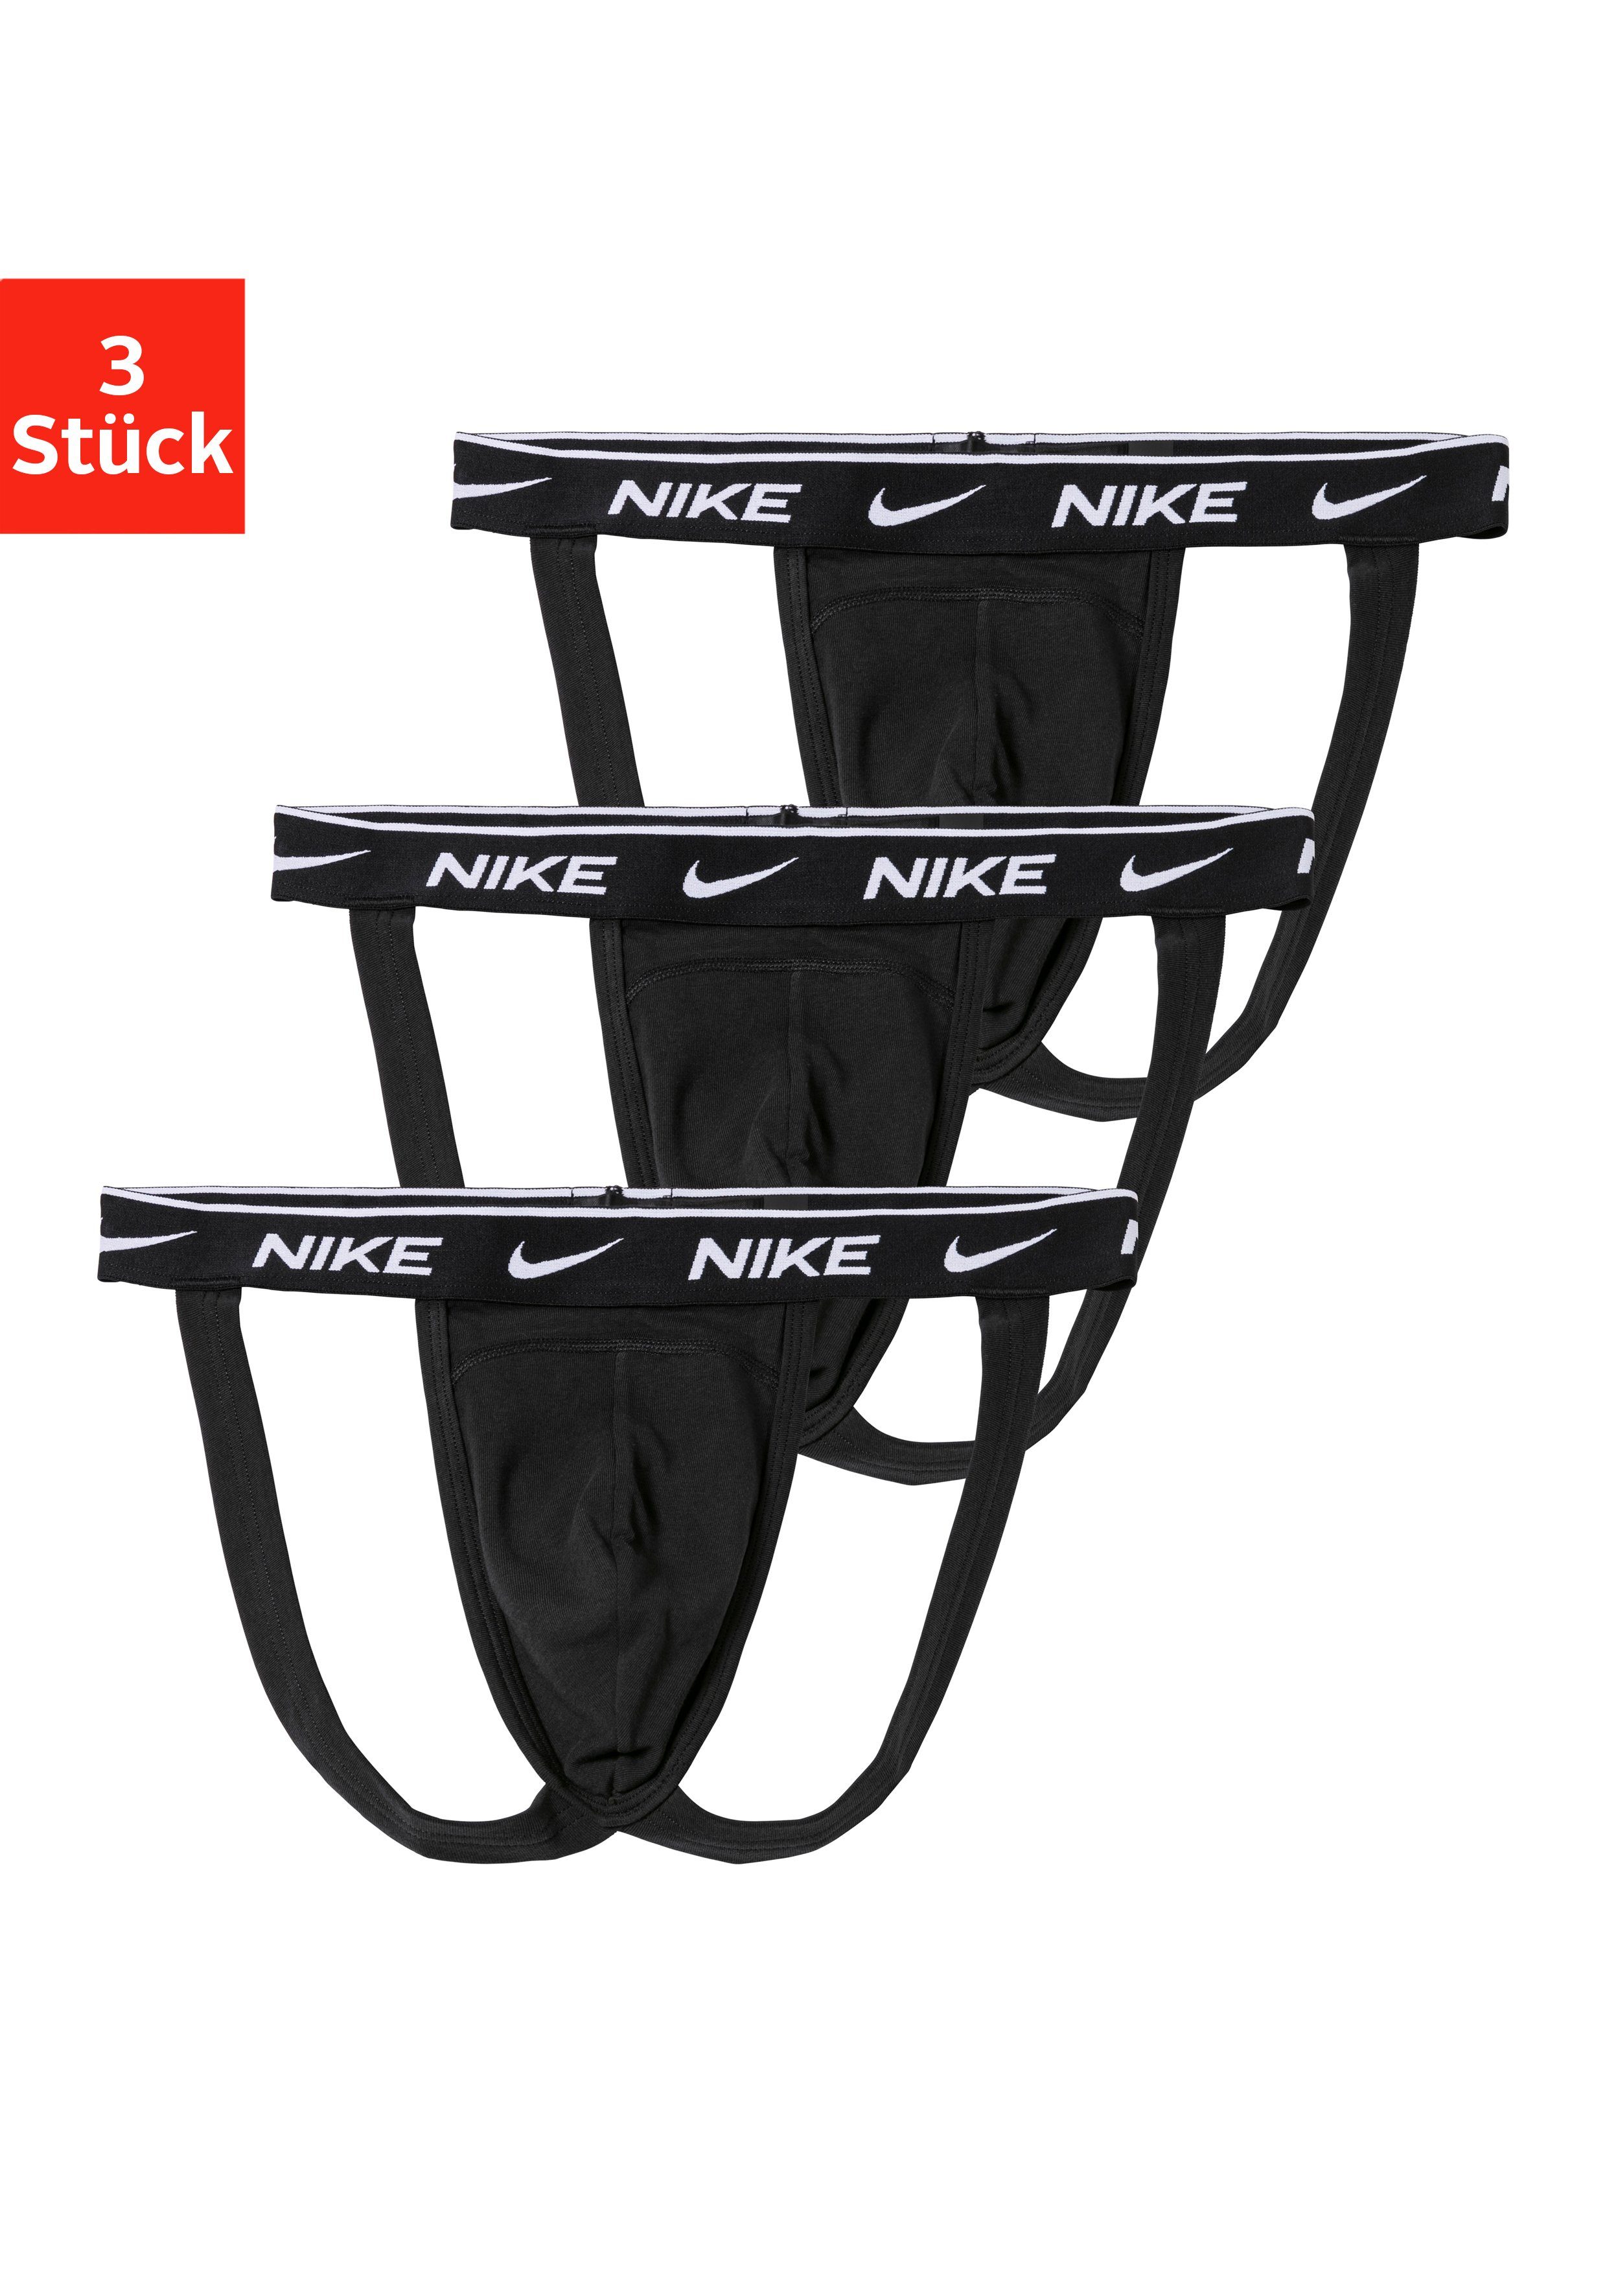 NIKE Underwear String (3 Stück) Jockstrap kaufen | OTTO